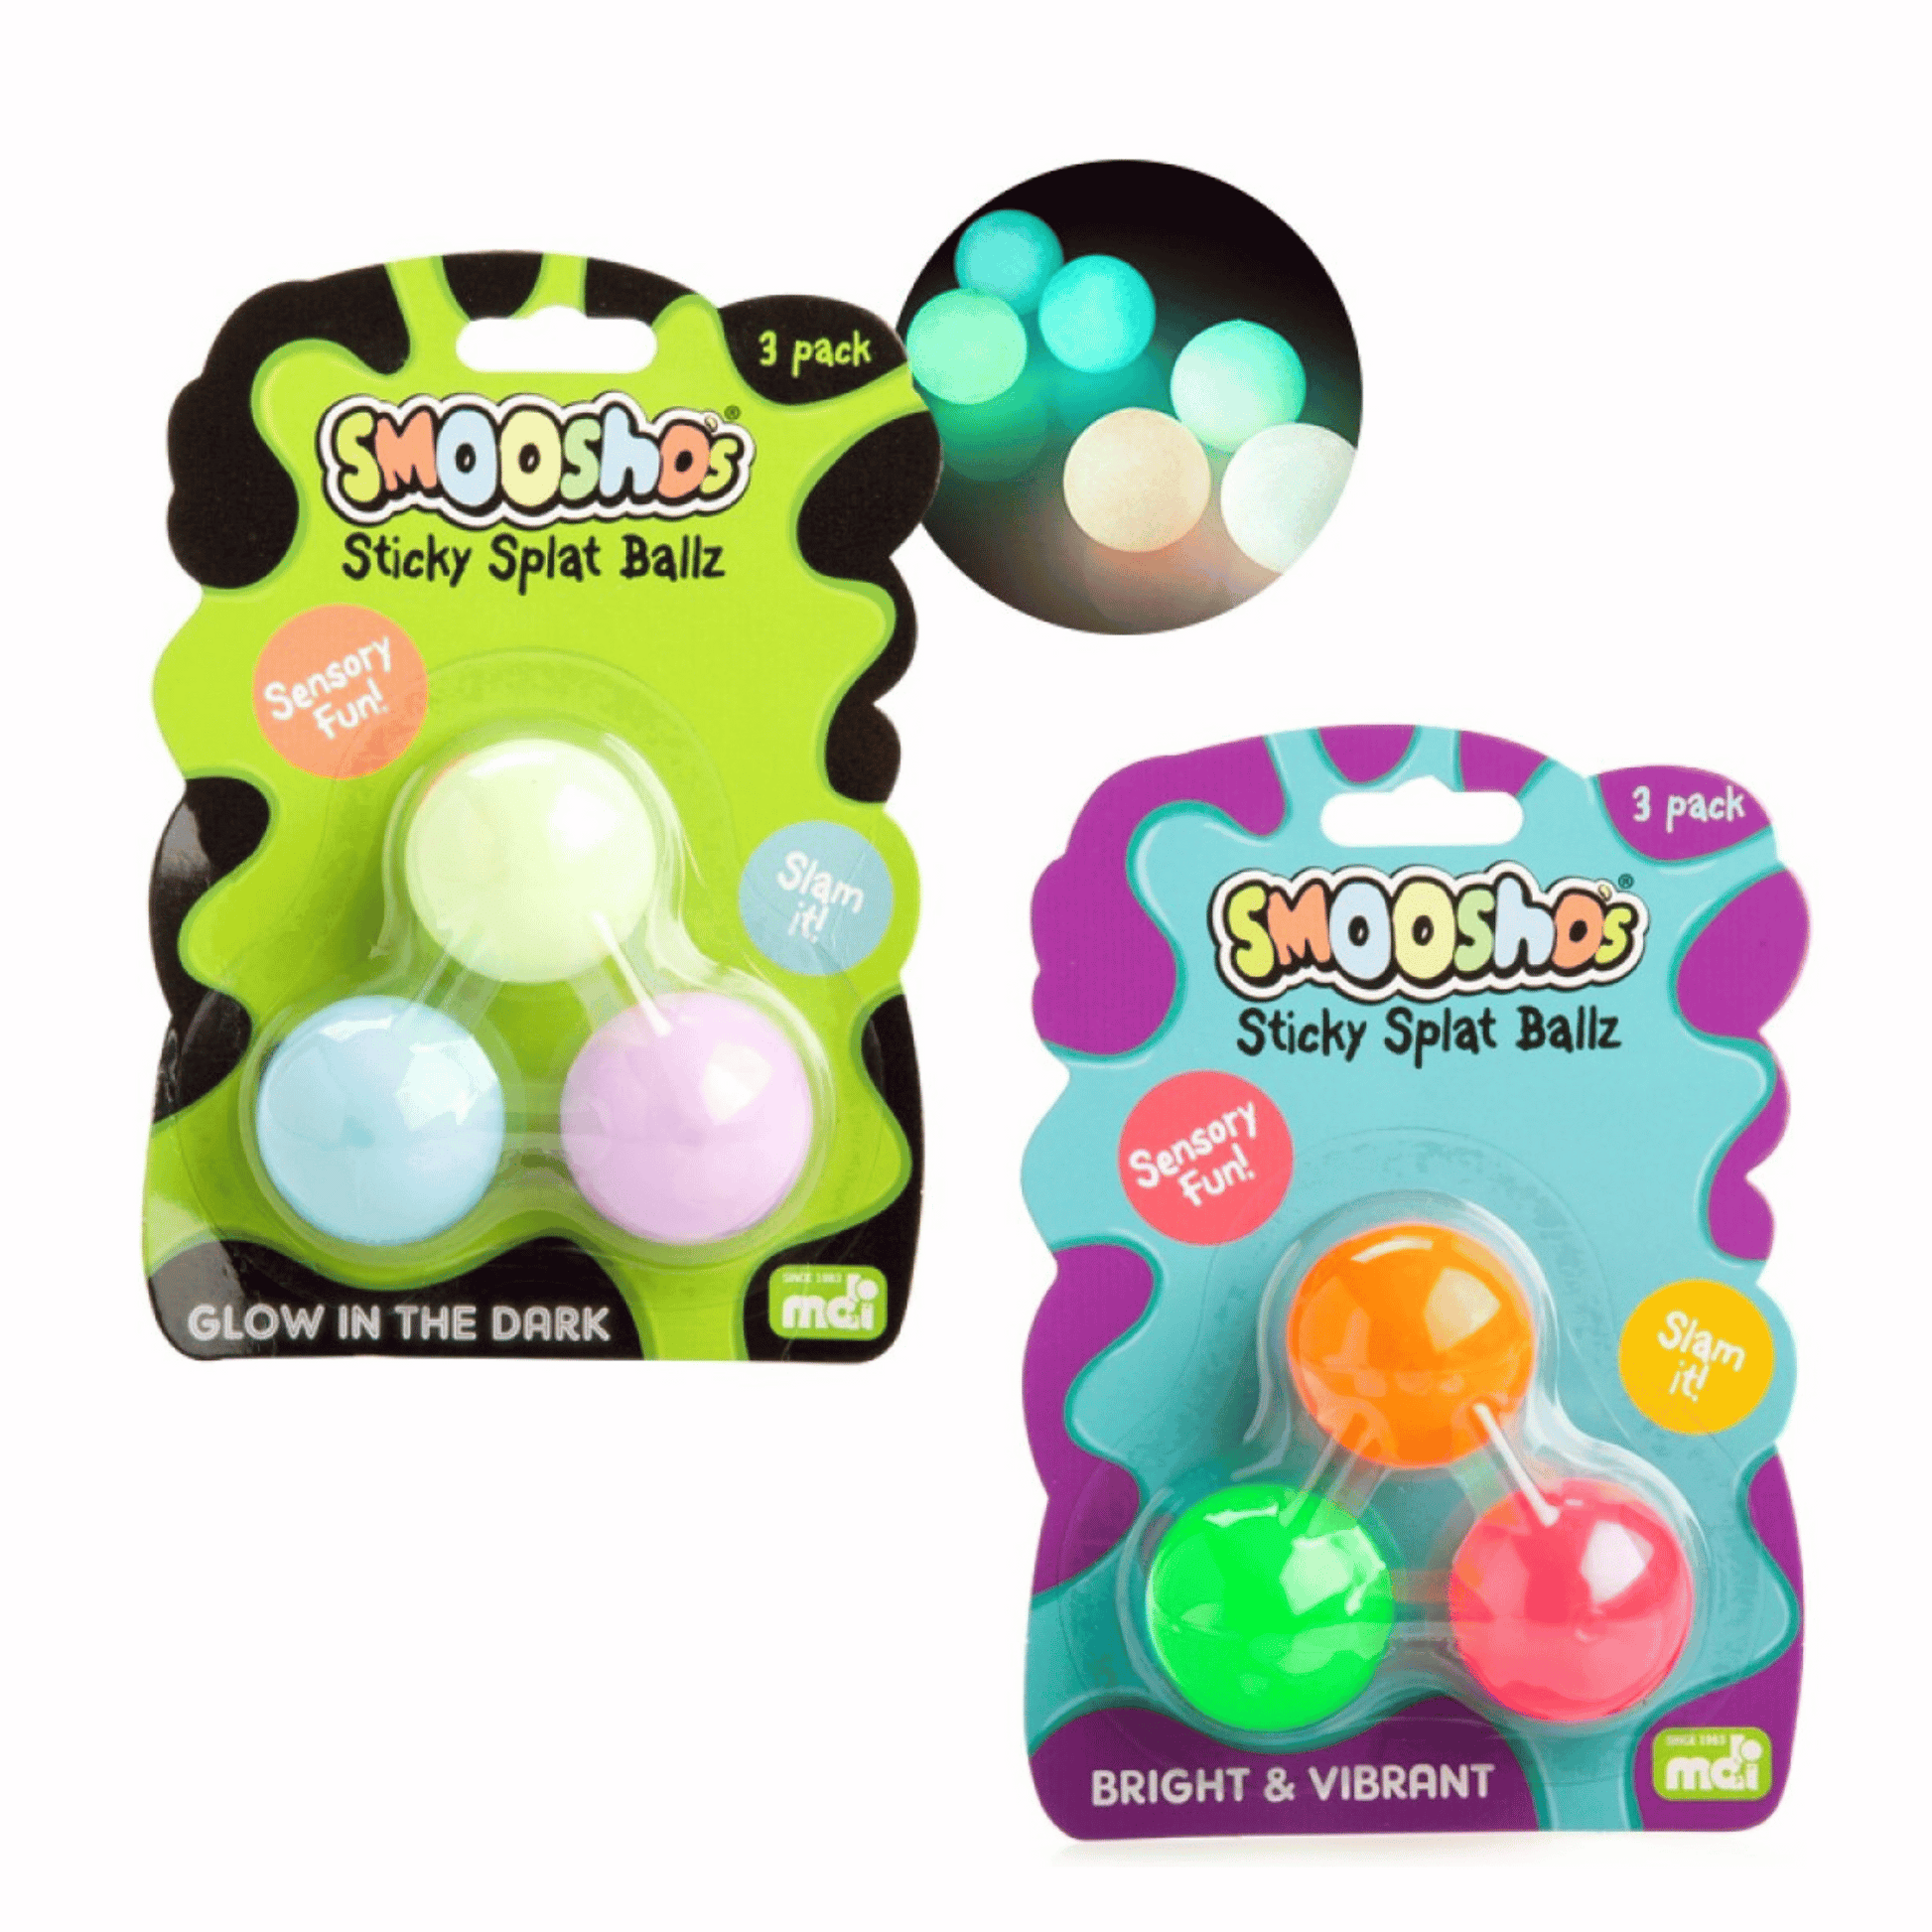 Smoosho Sticky Splat Balls